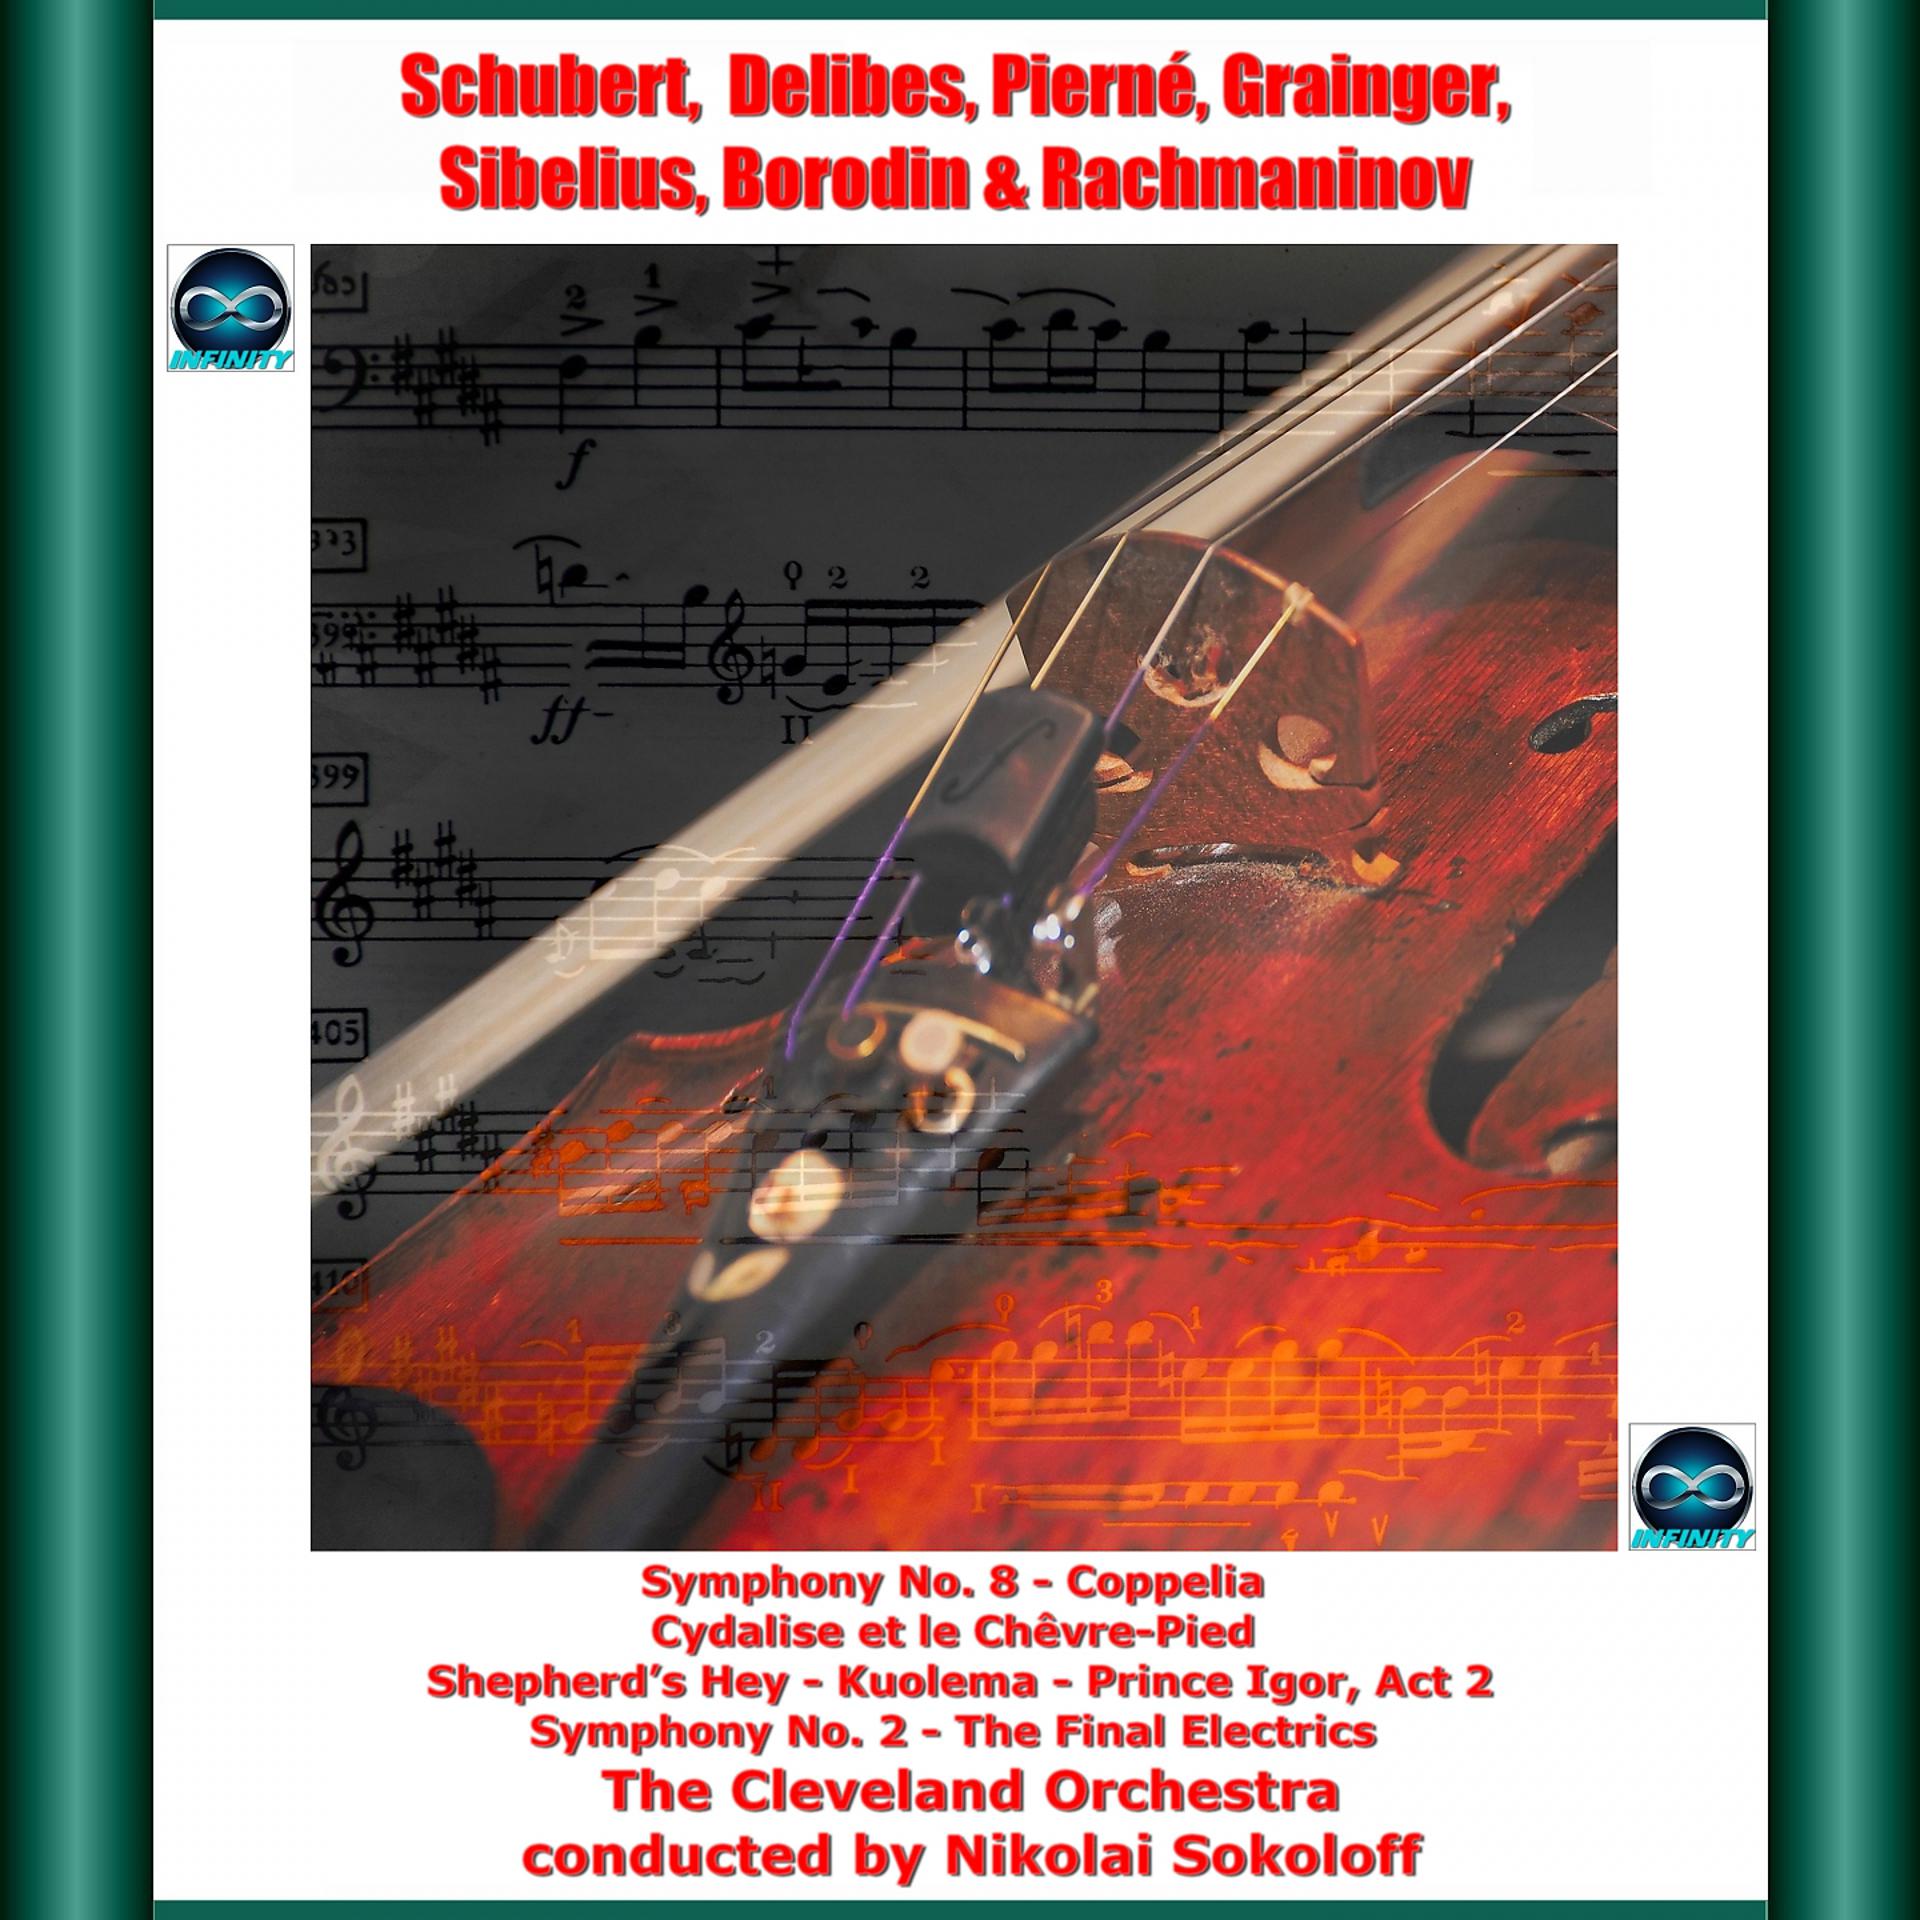 Постер альбома Schubert, delibes, pierné, grainger, sibelius, borodin & rachmaninov: symphony no. 8 - coppelia cydalise et le chêvre-pied - shepherd's hey - kuolema - prince igor, act 2 - symphony no. 2 - the final electrics